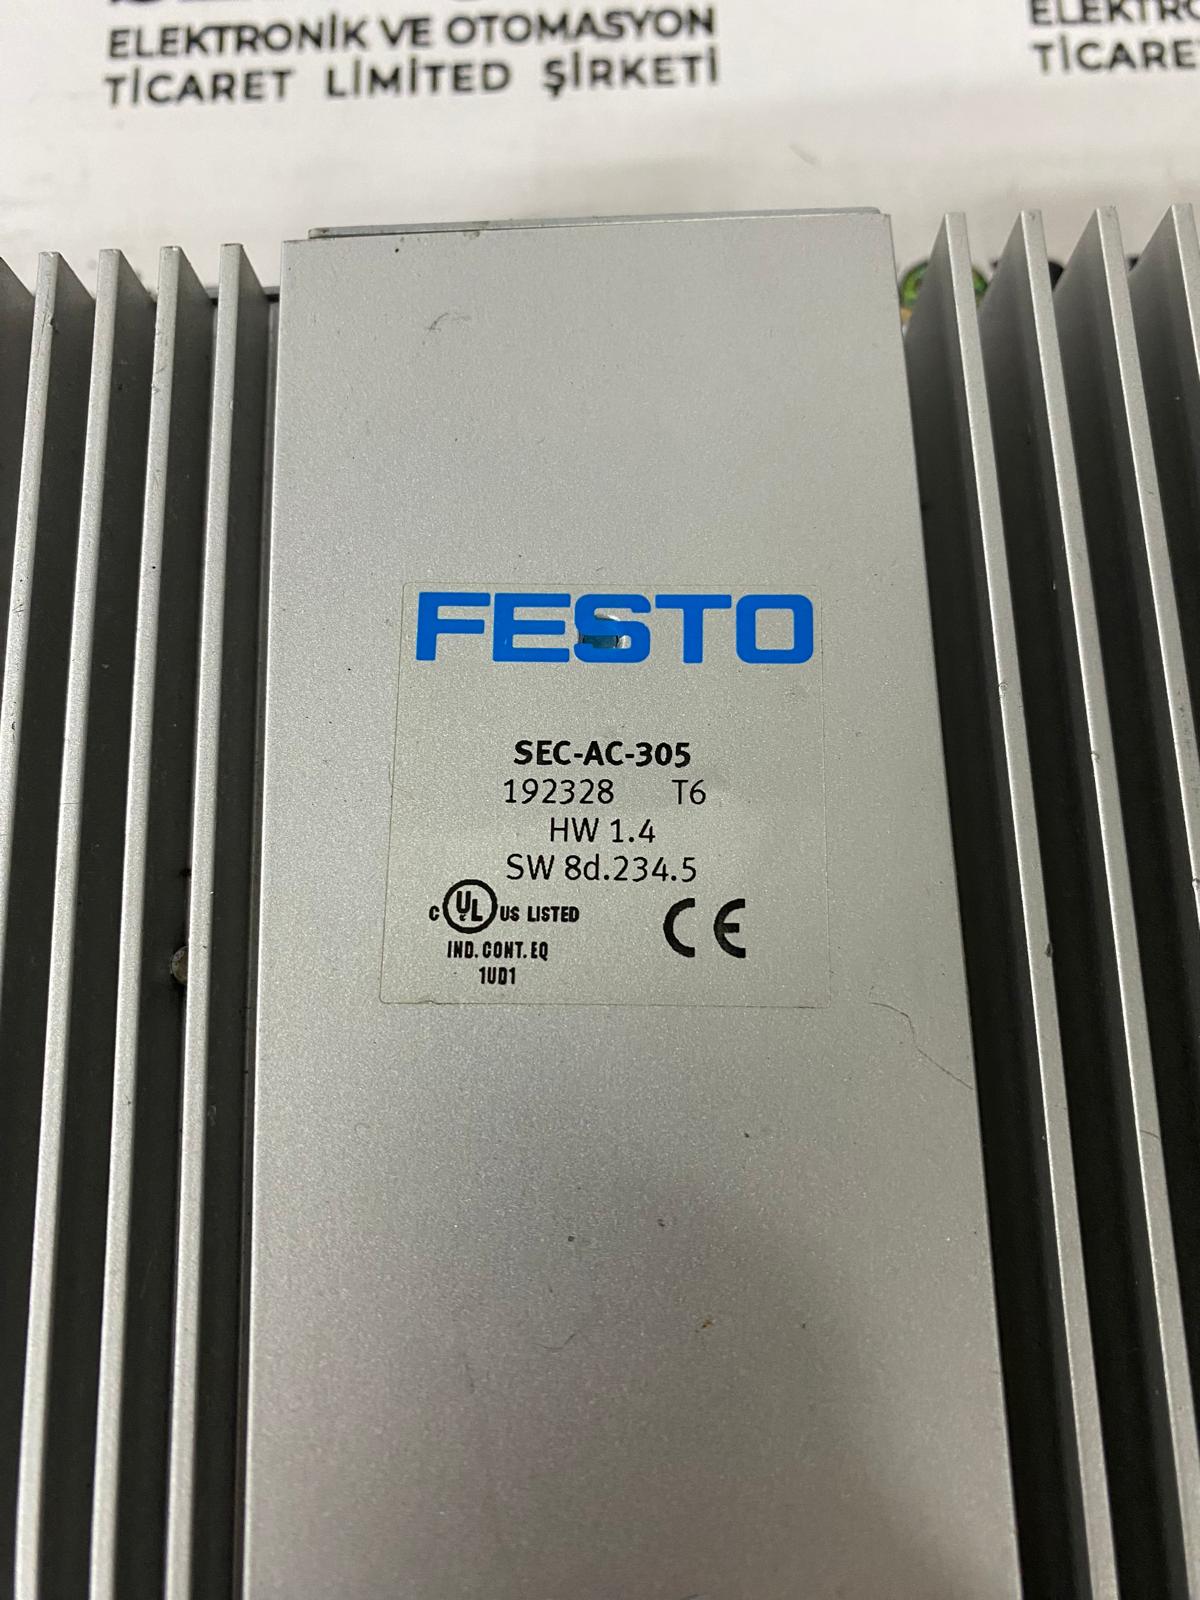 FESTO SEC-AC-305